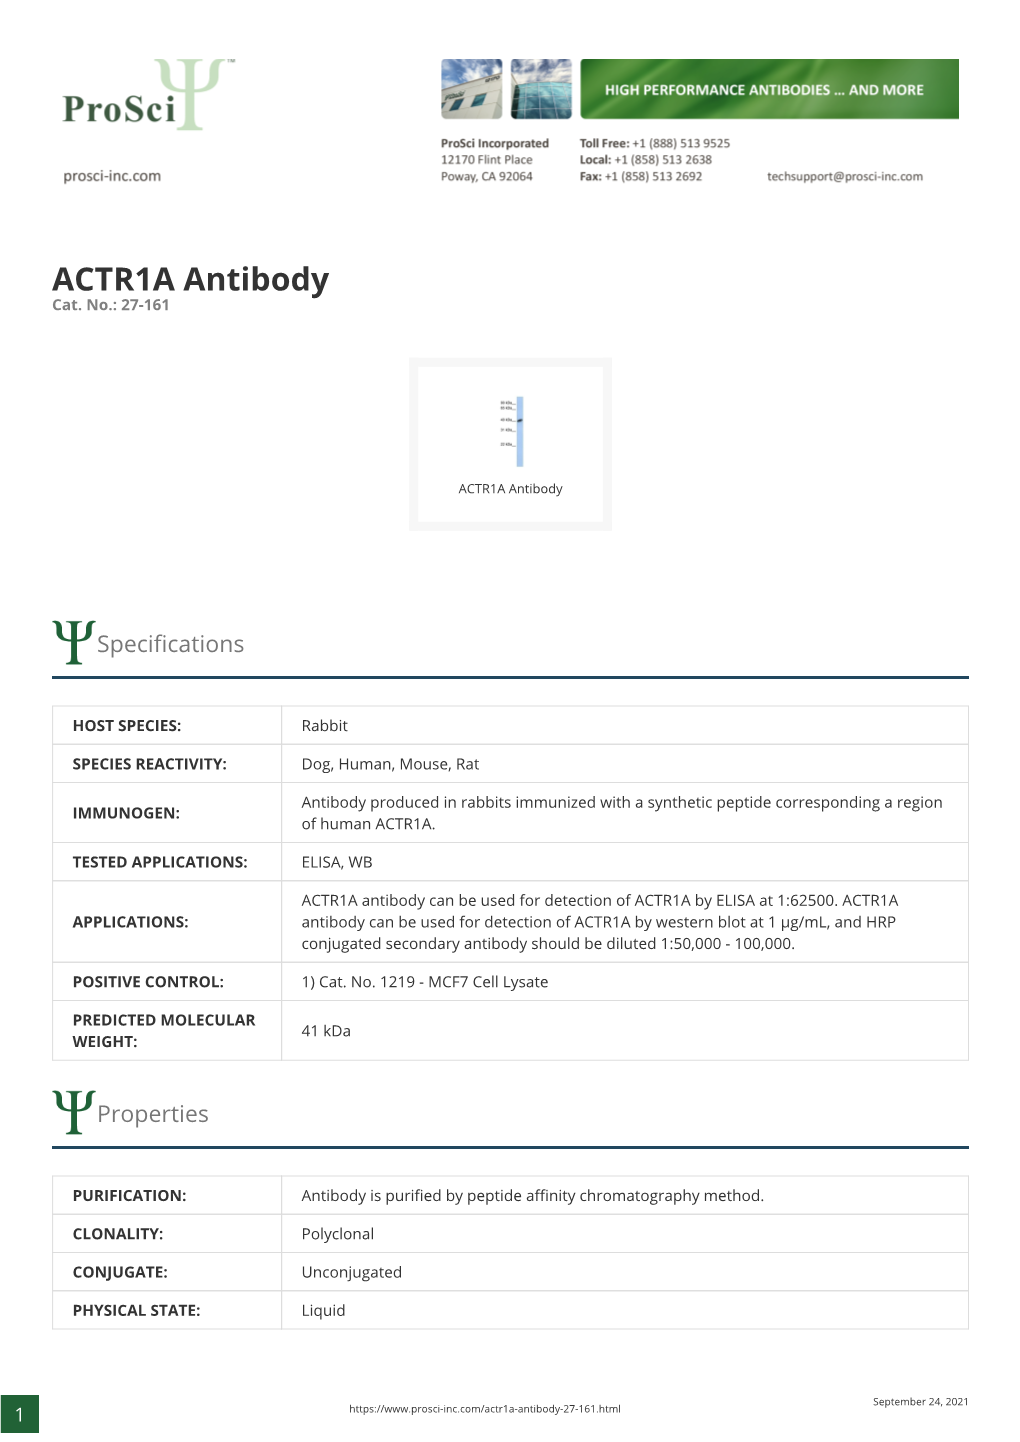 ACTR1A Antibody Cat